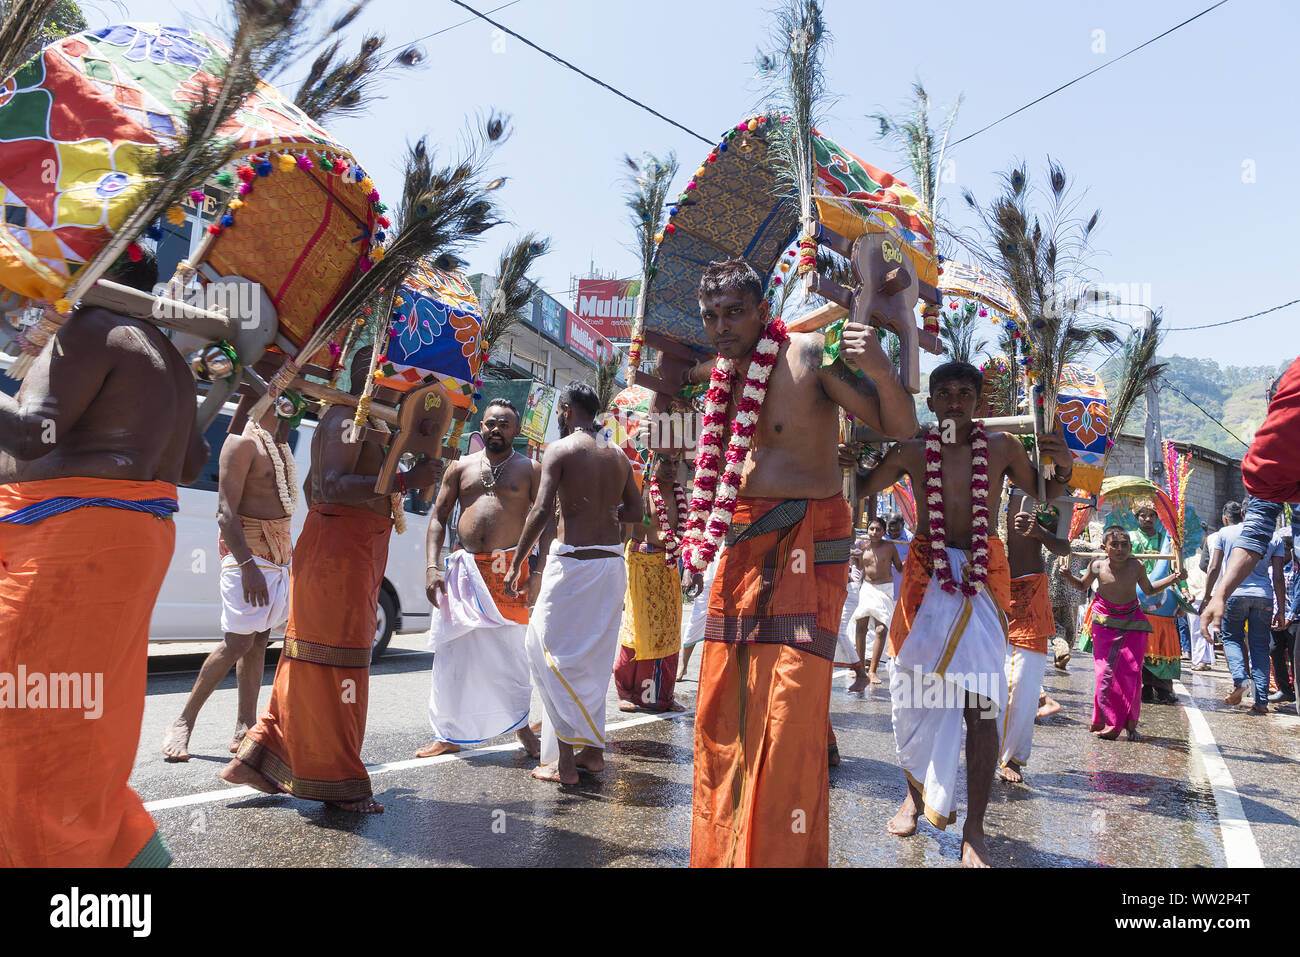 Pussellawa, Sri Lanka, 20.03.2019: Hindu Festival der Thaipusam - Body Piercing Rituale unter dem Blut Mond. Anhänger durch die Stadt paradieren Stockfoto